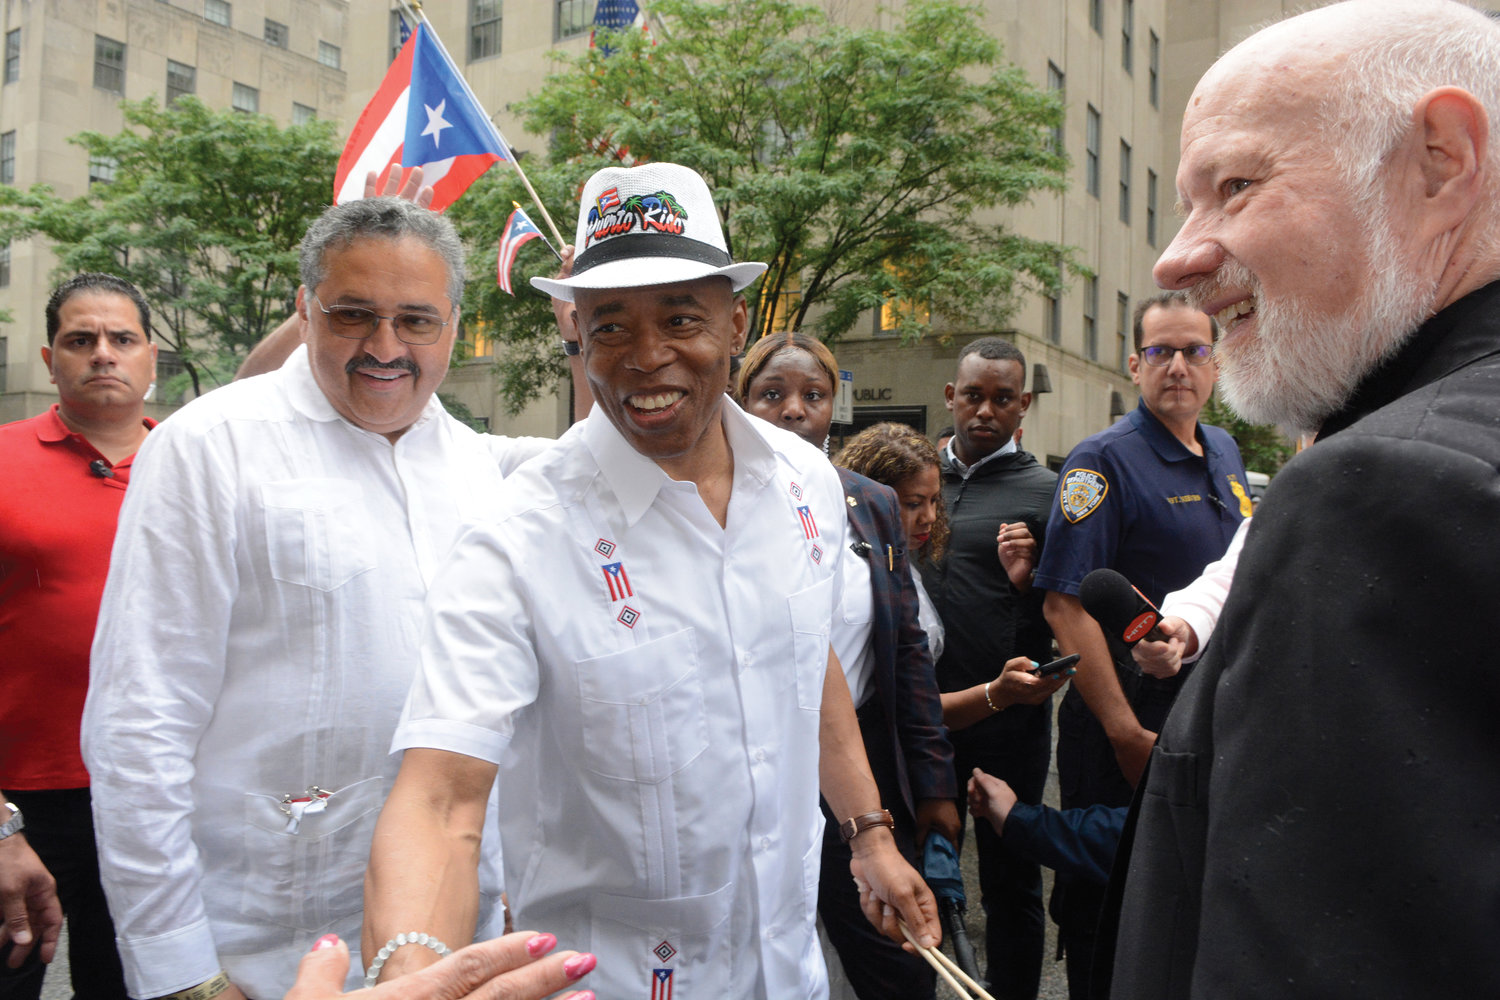 El alcalde Eric Adams de New York y Msgr. Kevin Sullivan, director ejecutivo de Caridades Católica arquidiocesano, comparten un momento de sonrisa durante el Desfile del Día de Puerto Rico el 12 de junio en la Quinta Avenida.